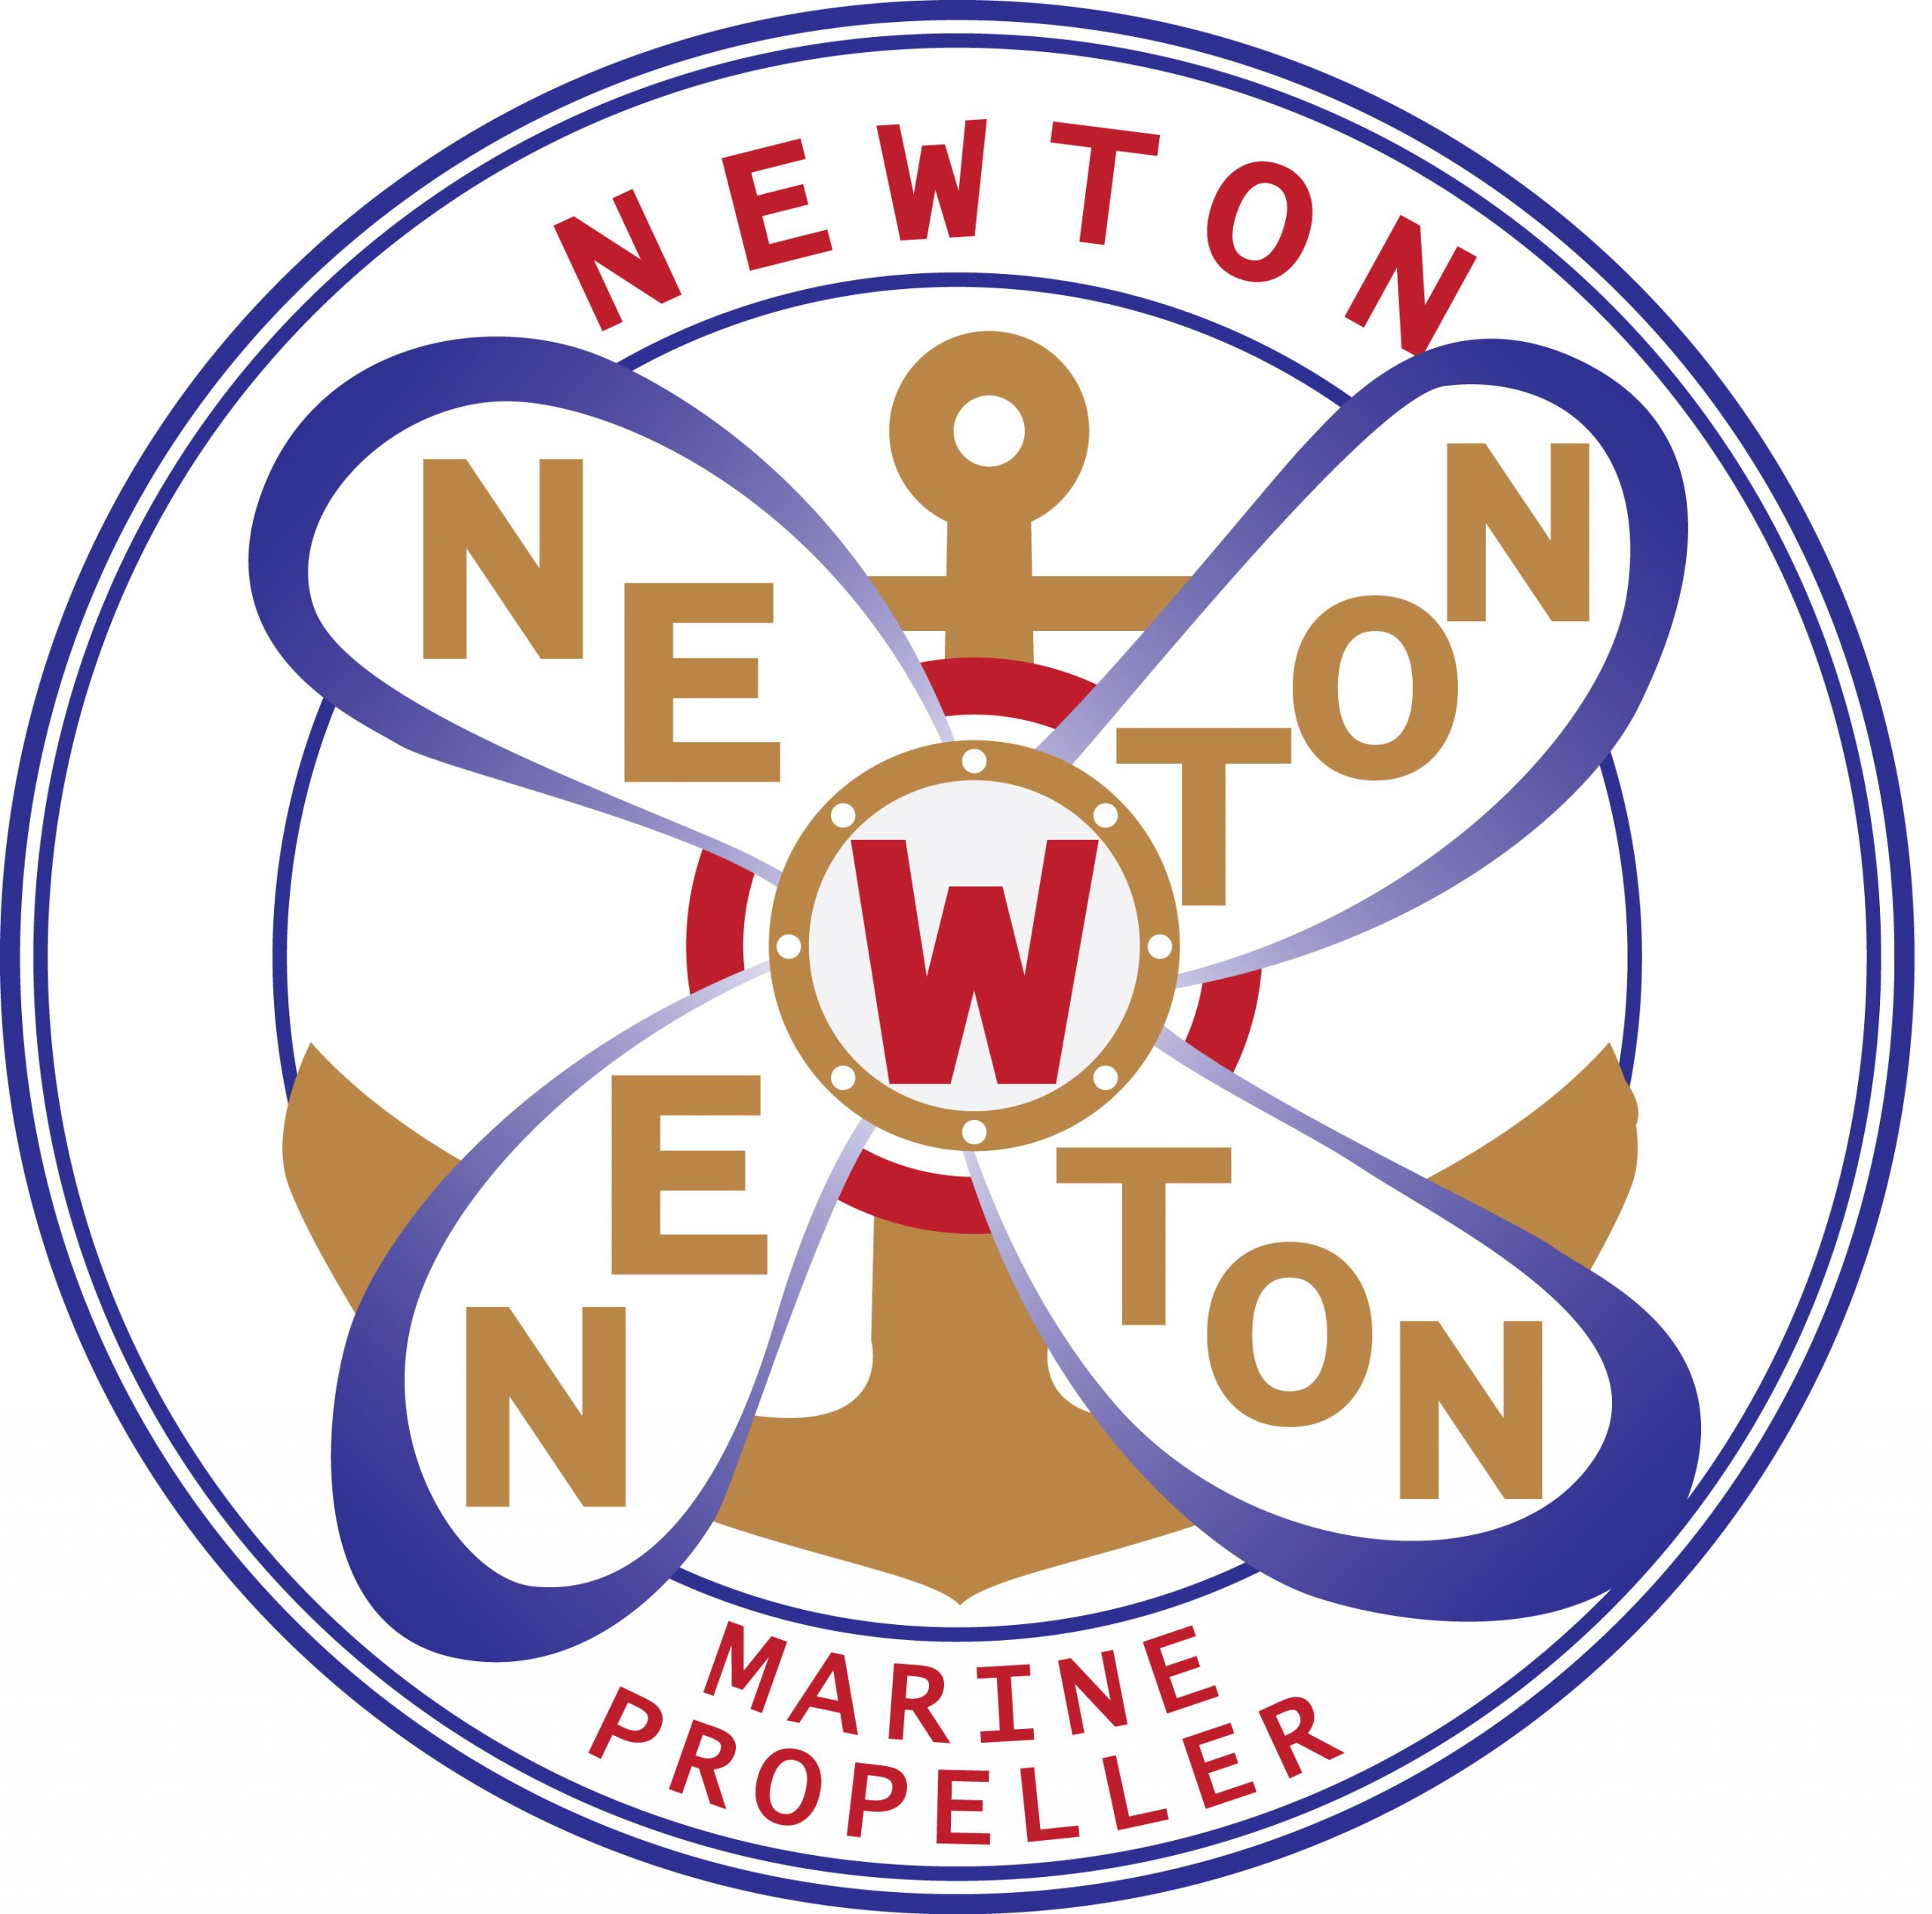 PROPELLER NEWTON